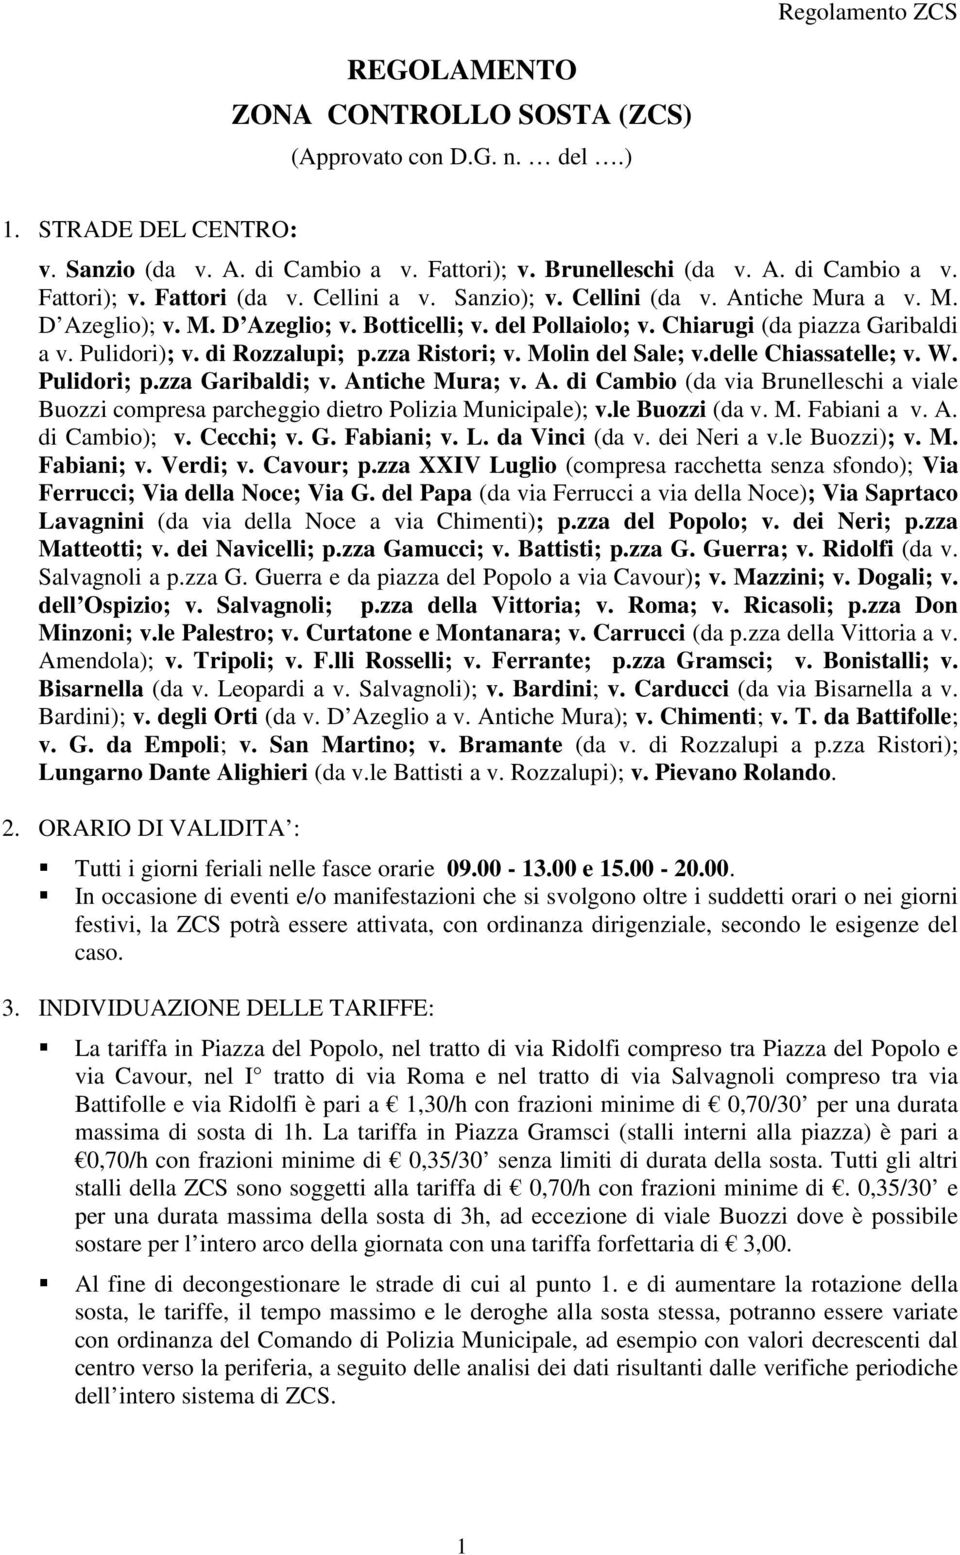 zza Ristori; v. Molin del Sale; v.delle Chiassatelle; v. W. Pulidori; p.zza Garibaldi; v. Antiche Mura; v. A. di Cambio (da via Brunelleschi a viale Buozzi compresa parcheggio dietro Polizia Municipale); v.